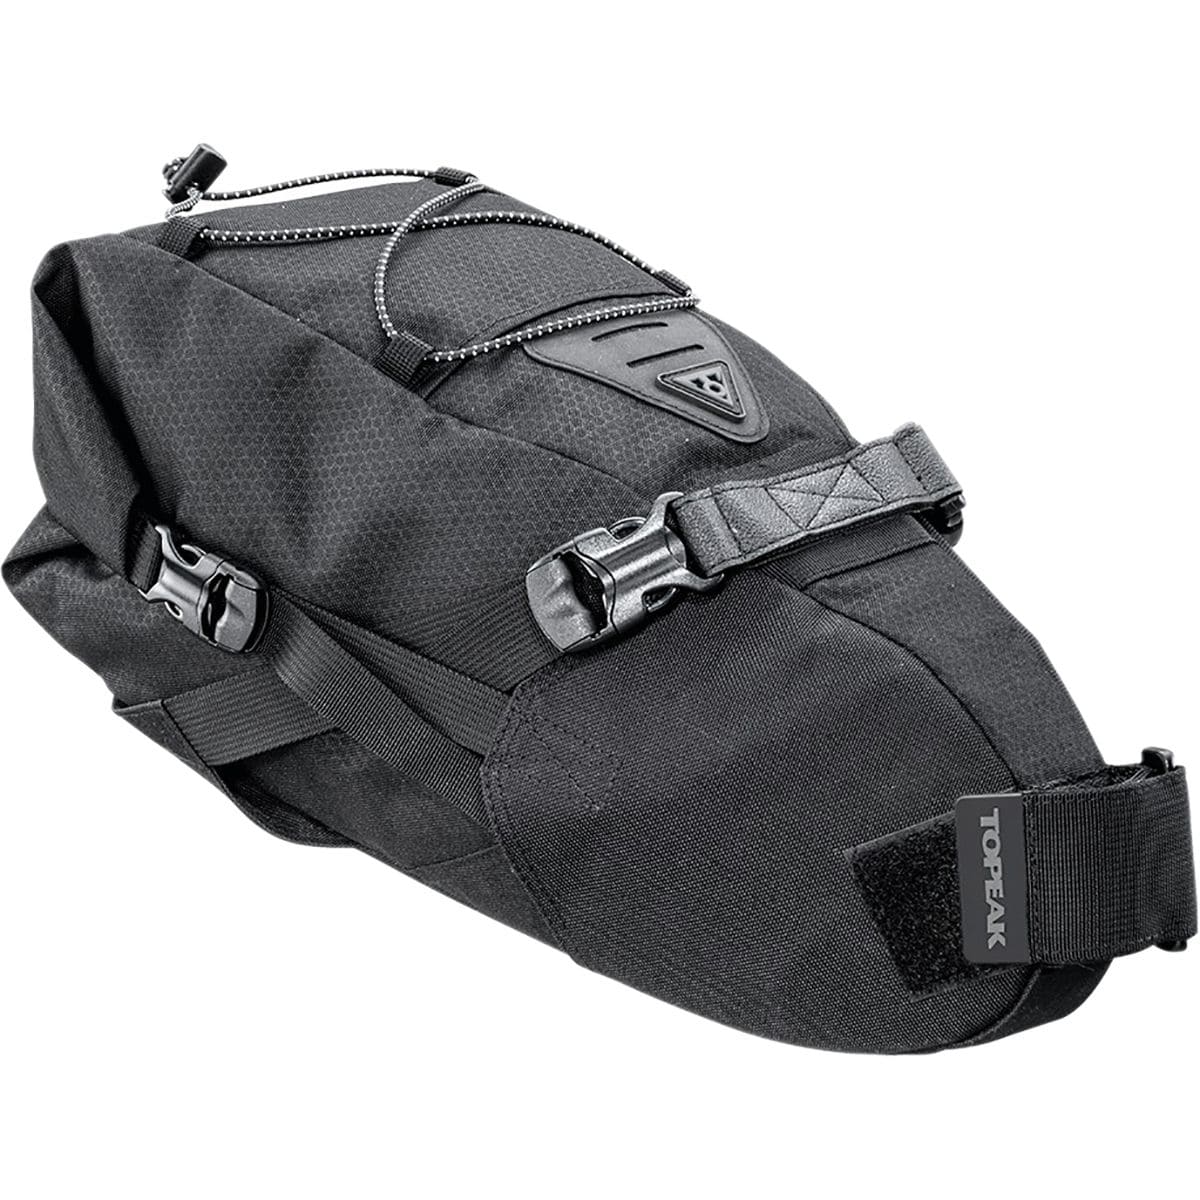 BackLoader Seat Bag